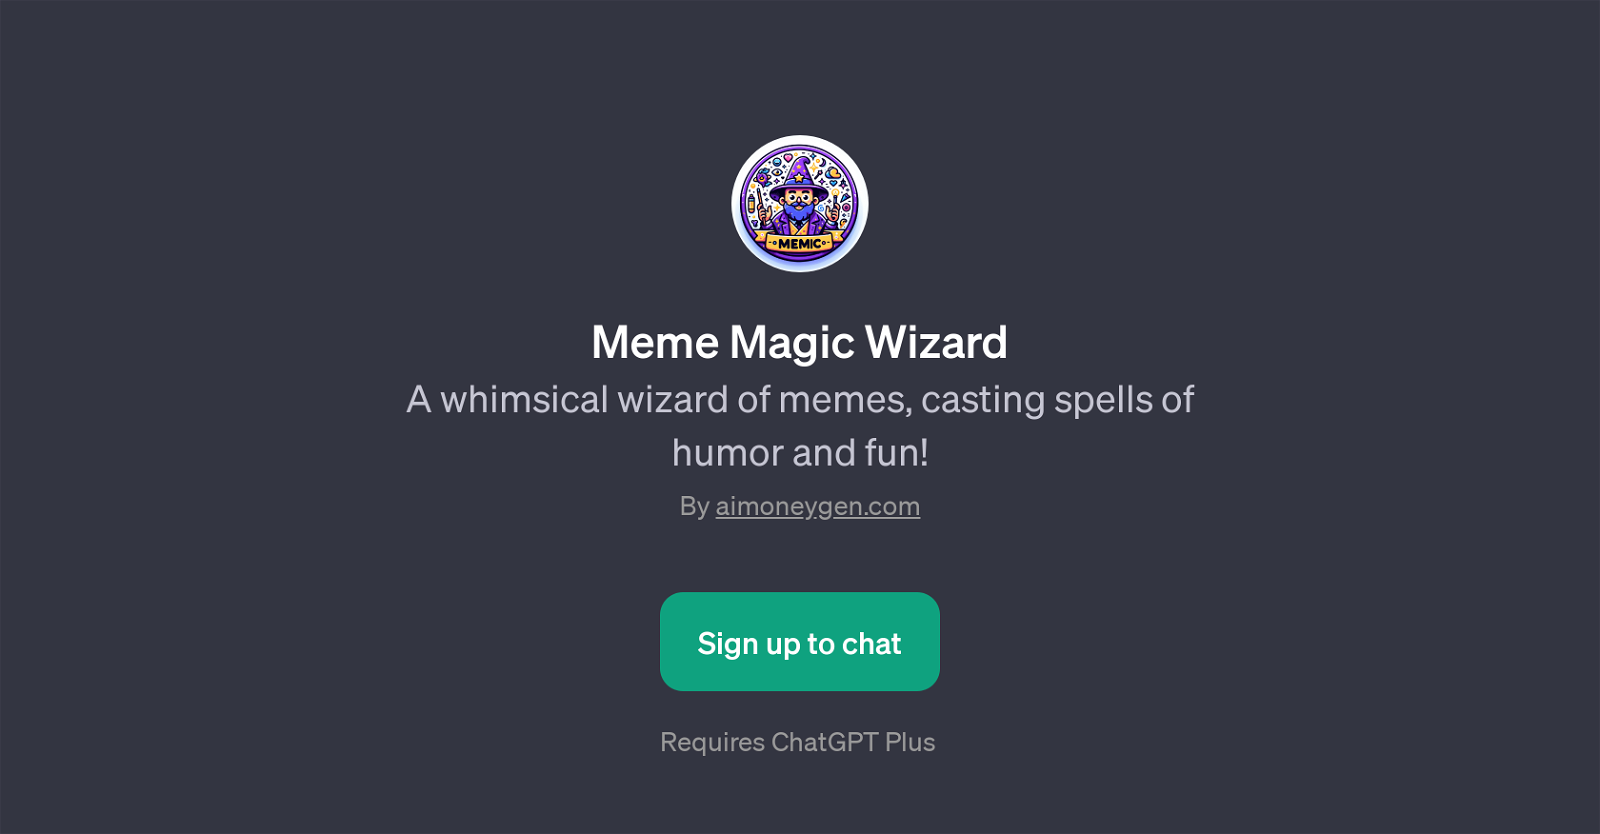 Meme Magic Wizard website